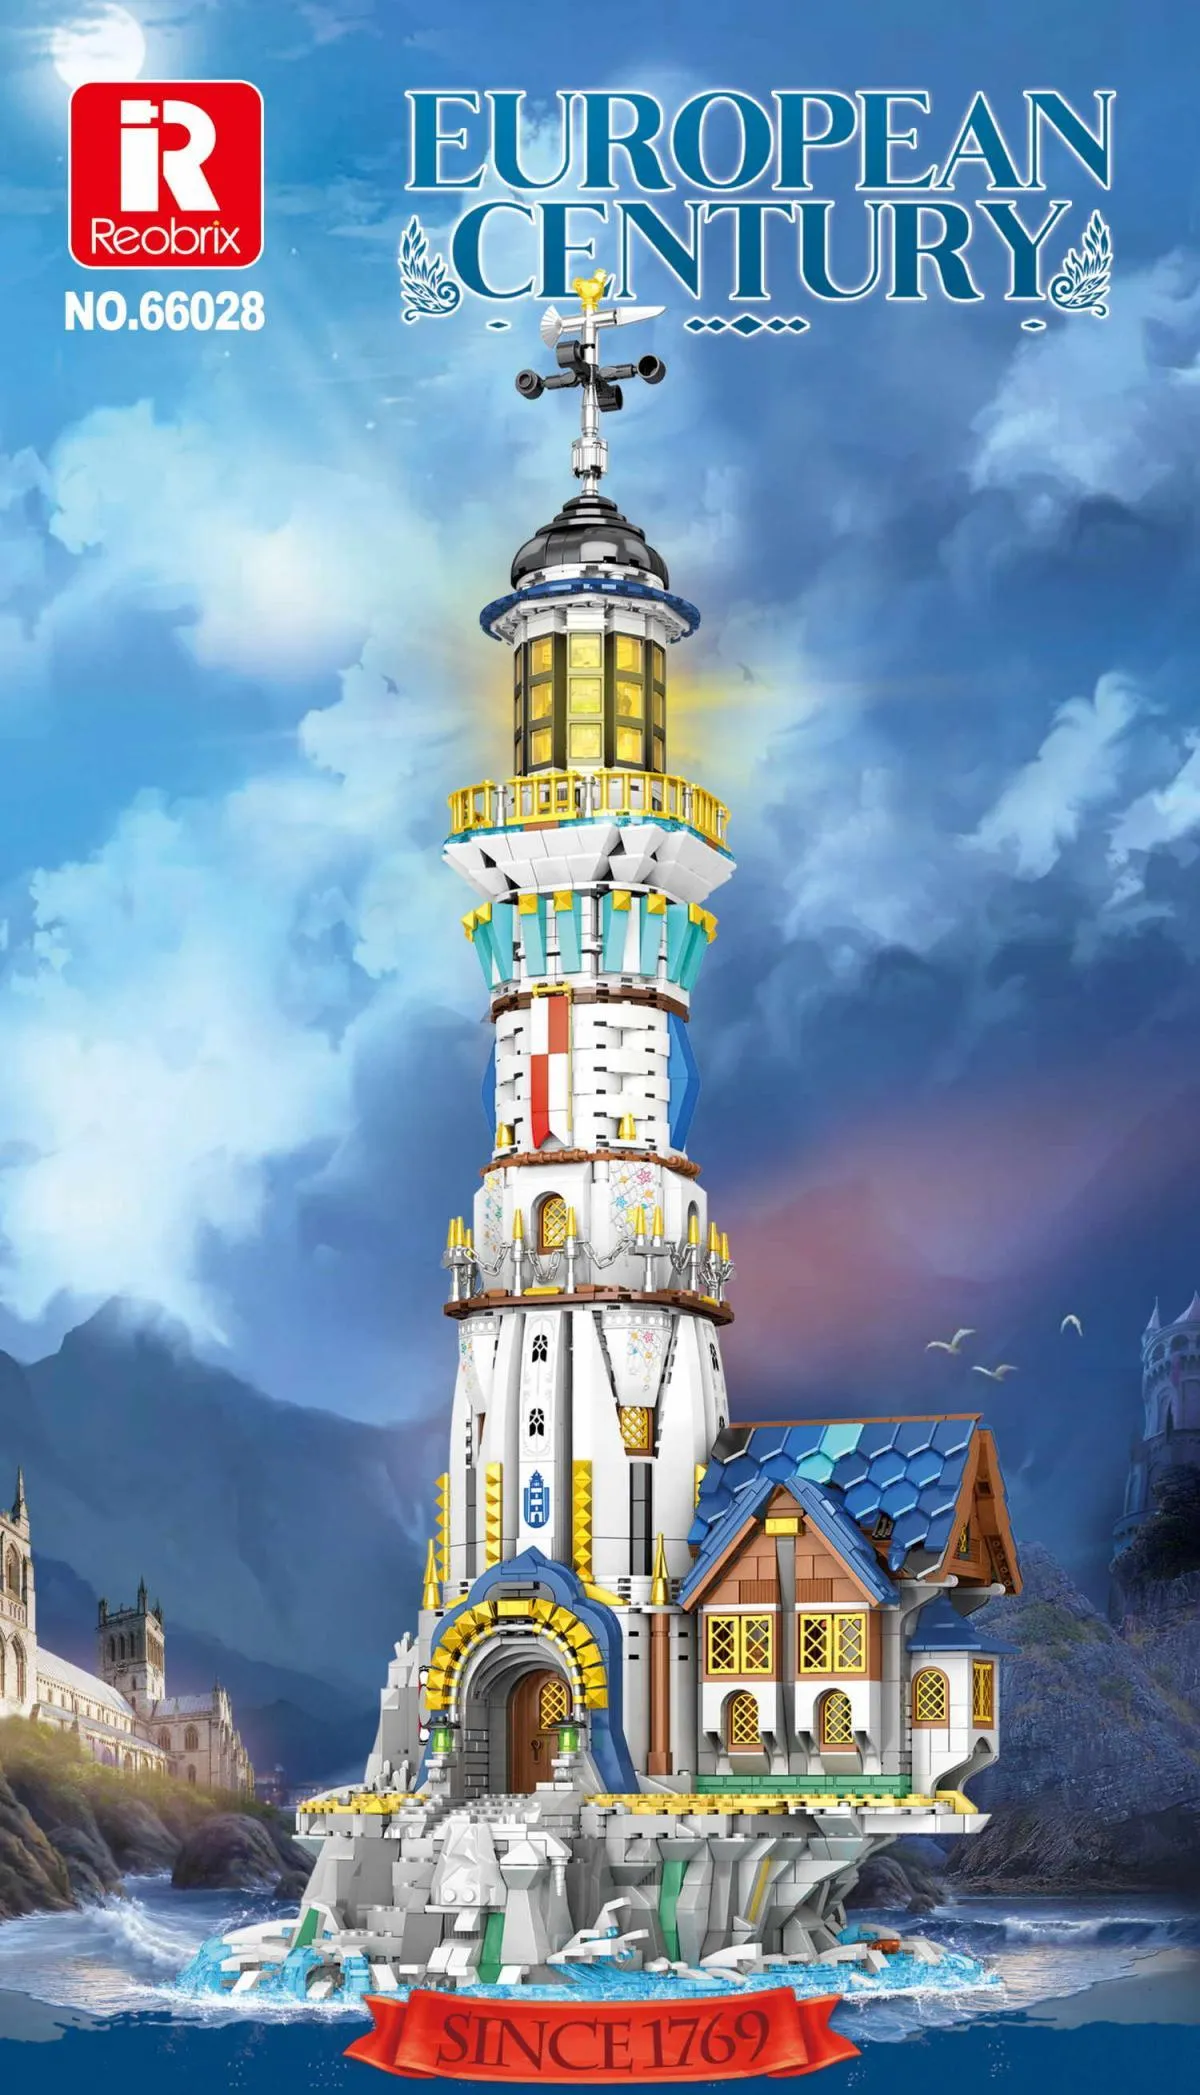 European Century Lighthouse Gallery